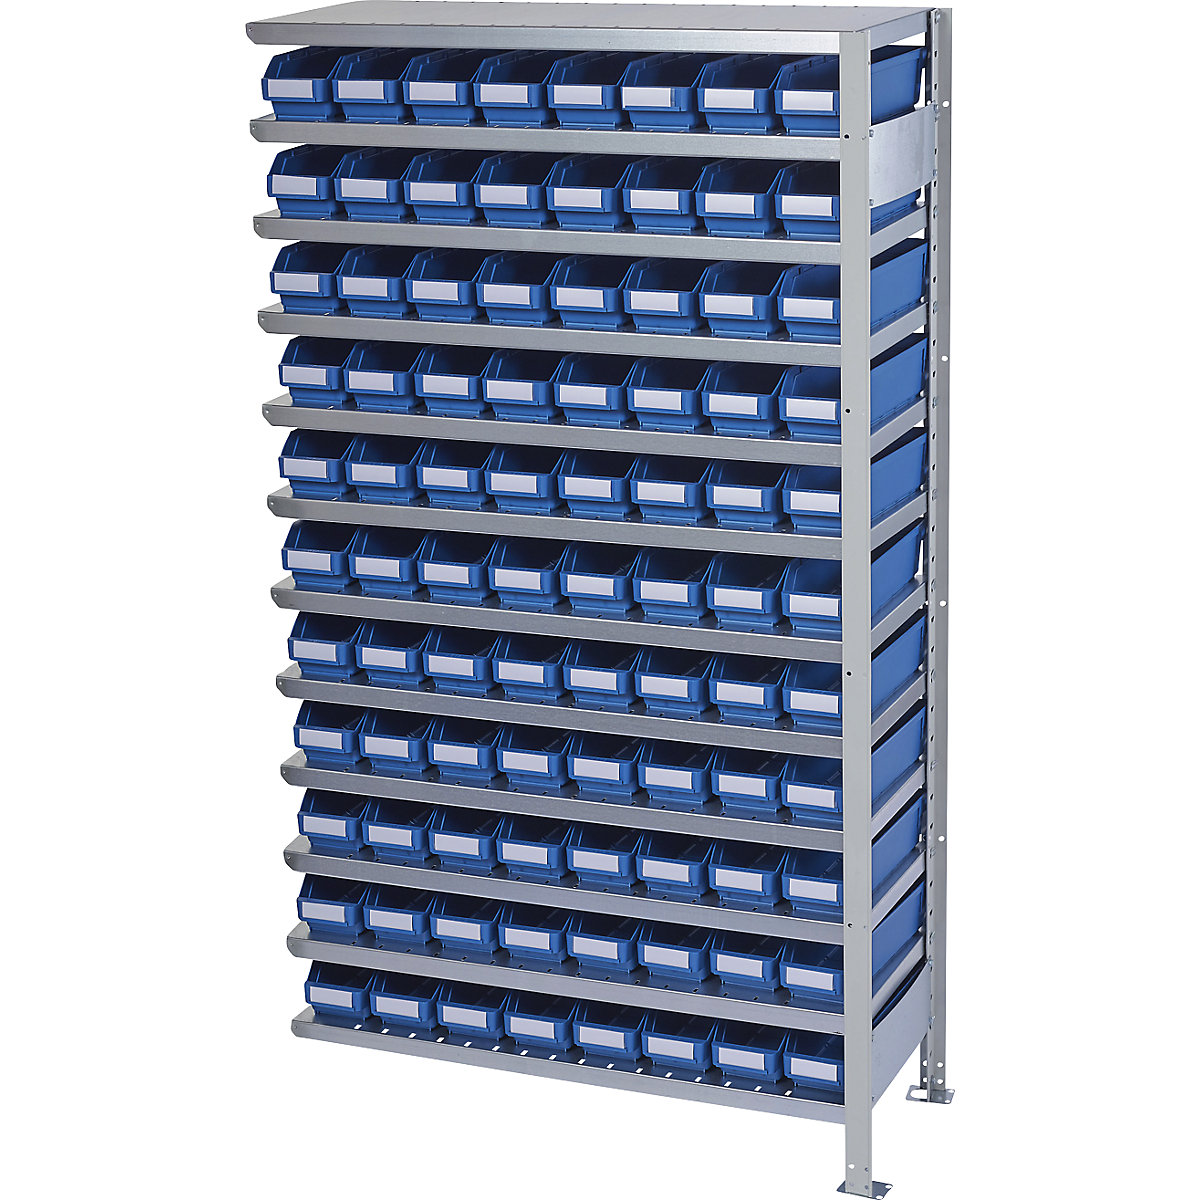 Összedugaszolós állvány dobozokkal – STEMO, állványmagasság 1790 mm, bővítő állvány, 400 mm mély, 88 kék doboz-21